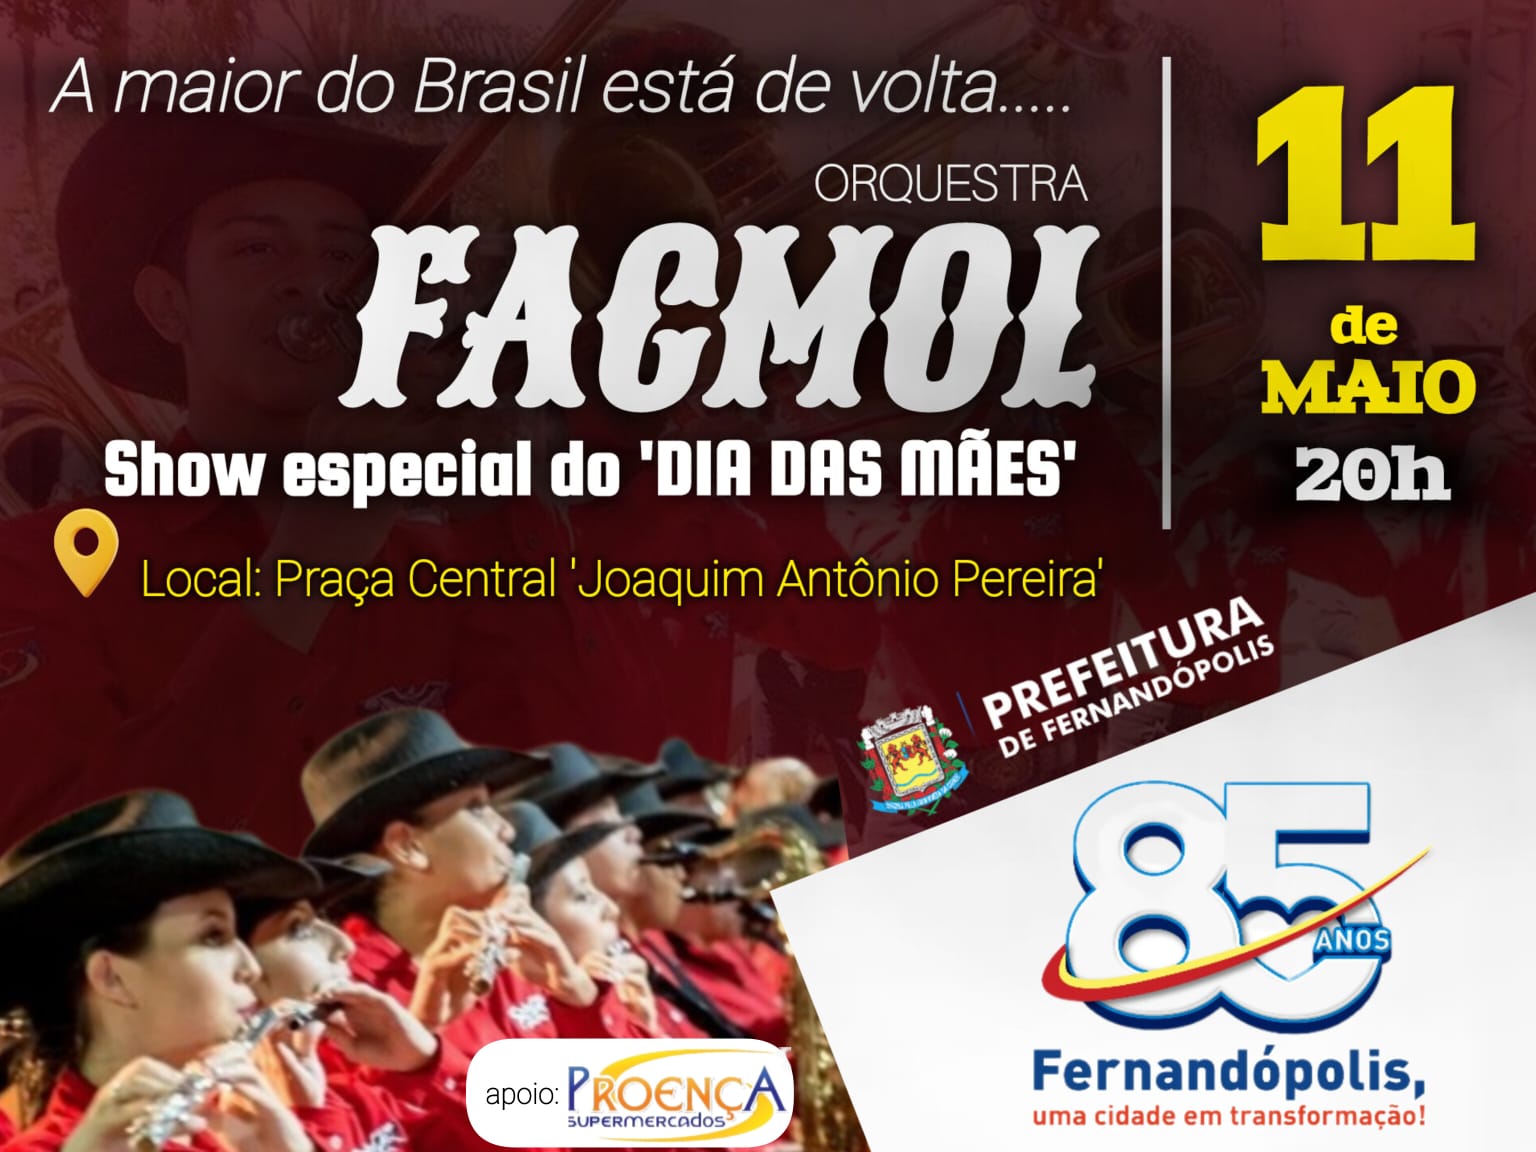 Show da ‘Orquestra Facmol’ é confirmado para maio em Fernandópolis